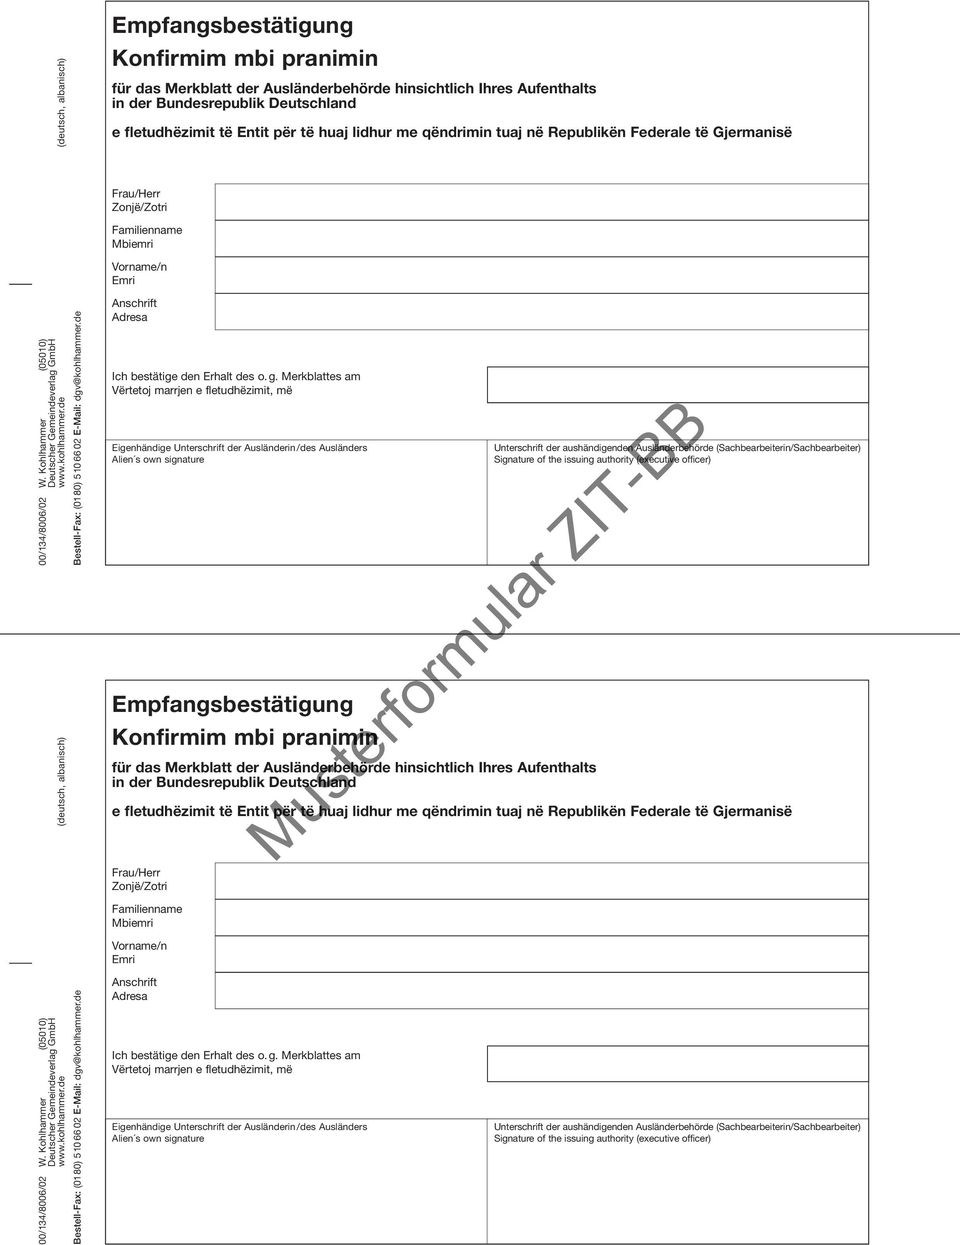 kohlhammer.de (deutsch, albanisch) Bestell-Fax: (0180) 510 66 02 E-Mail: dgv